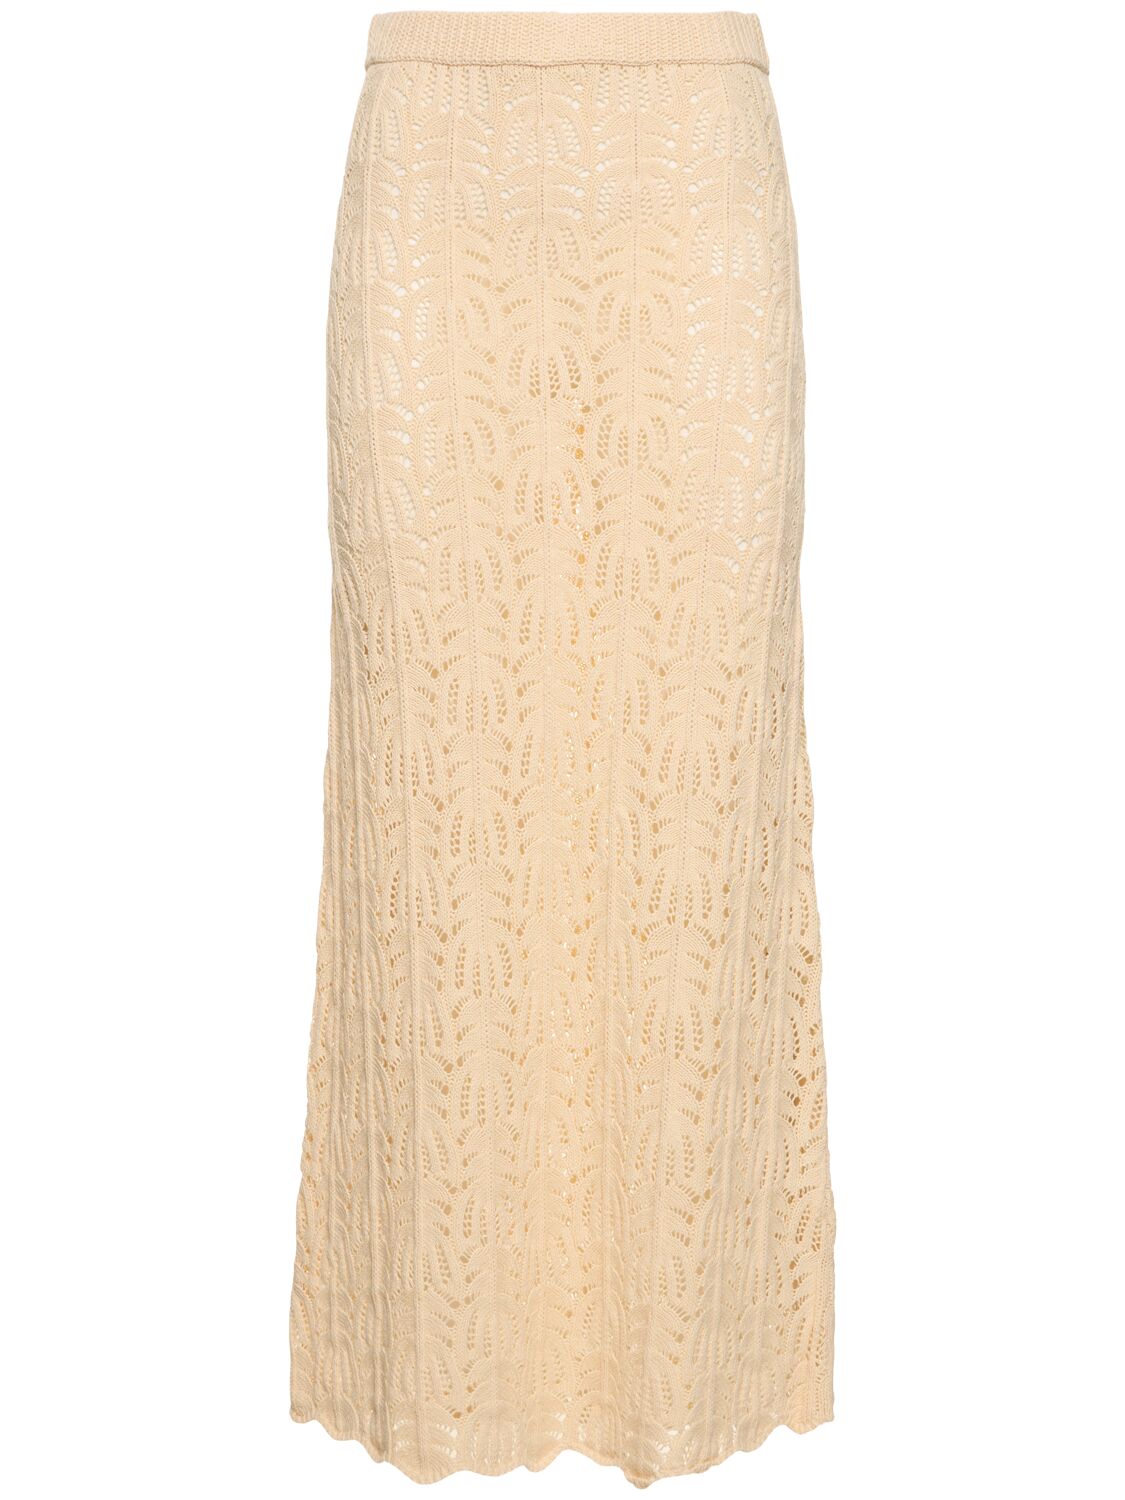 The Garment Egypt Crochet Cotton Linen Long Skirt In Bone